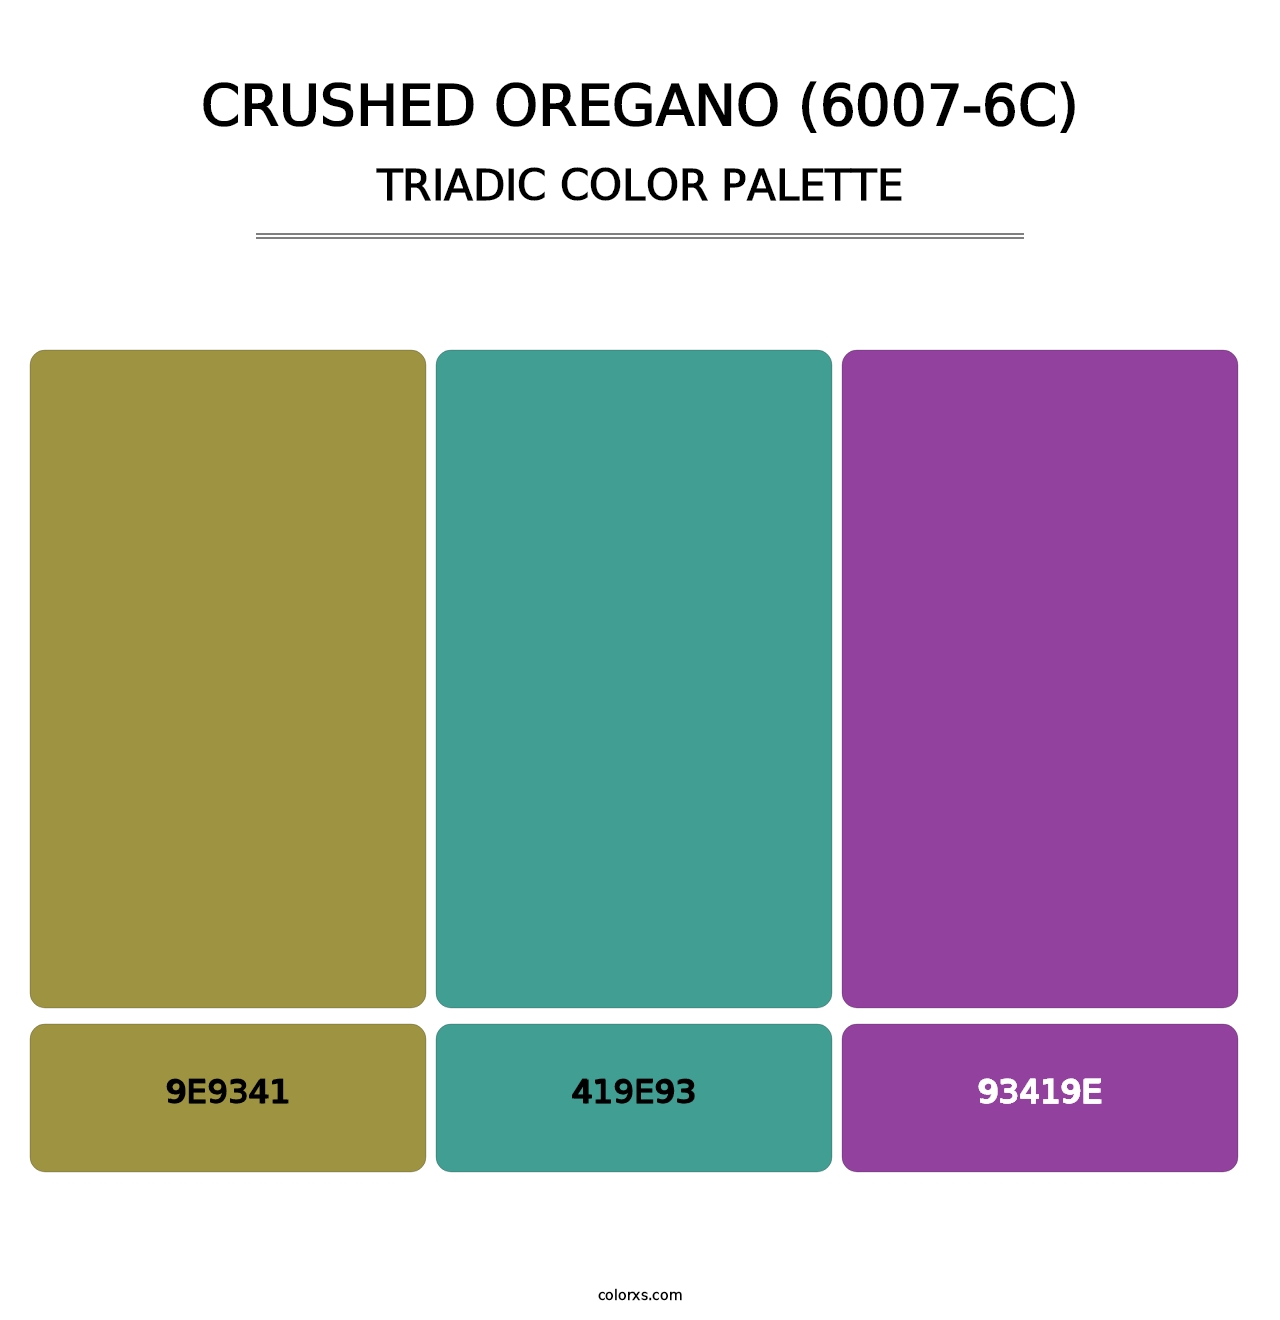 Crushed Oregano (6007-6C) - Triadic Color Palette